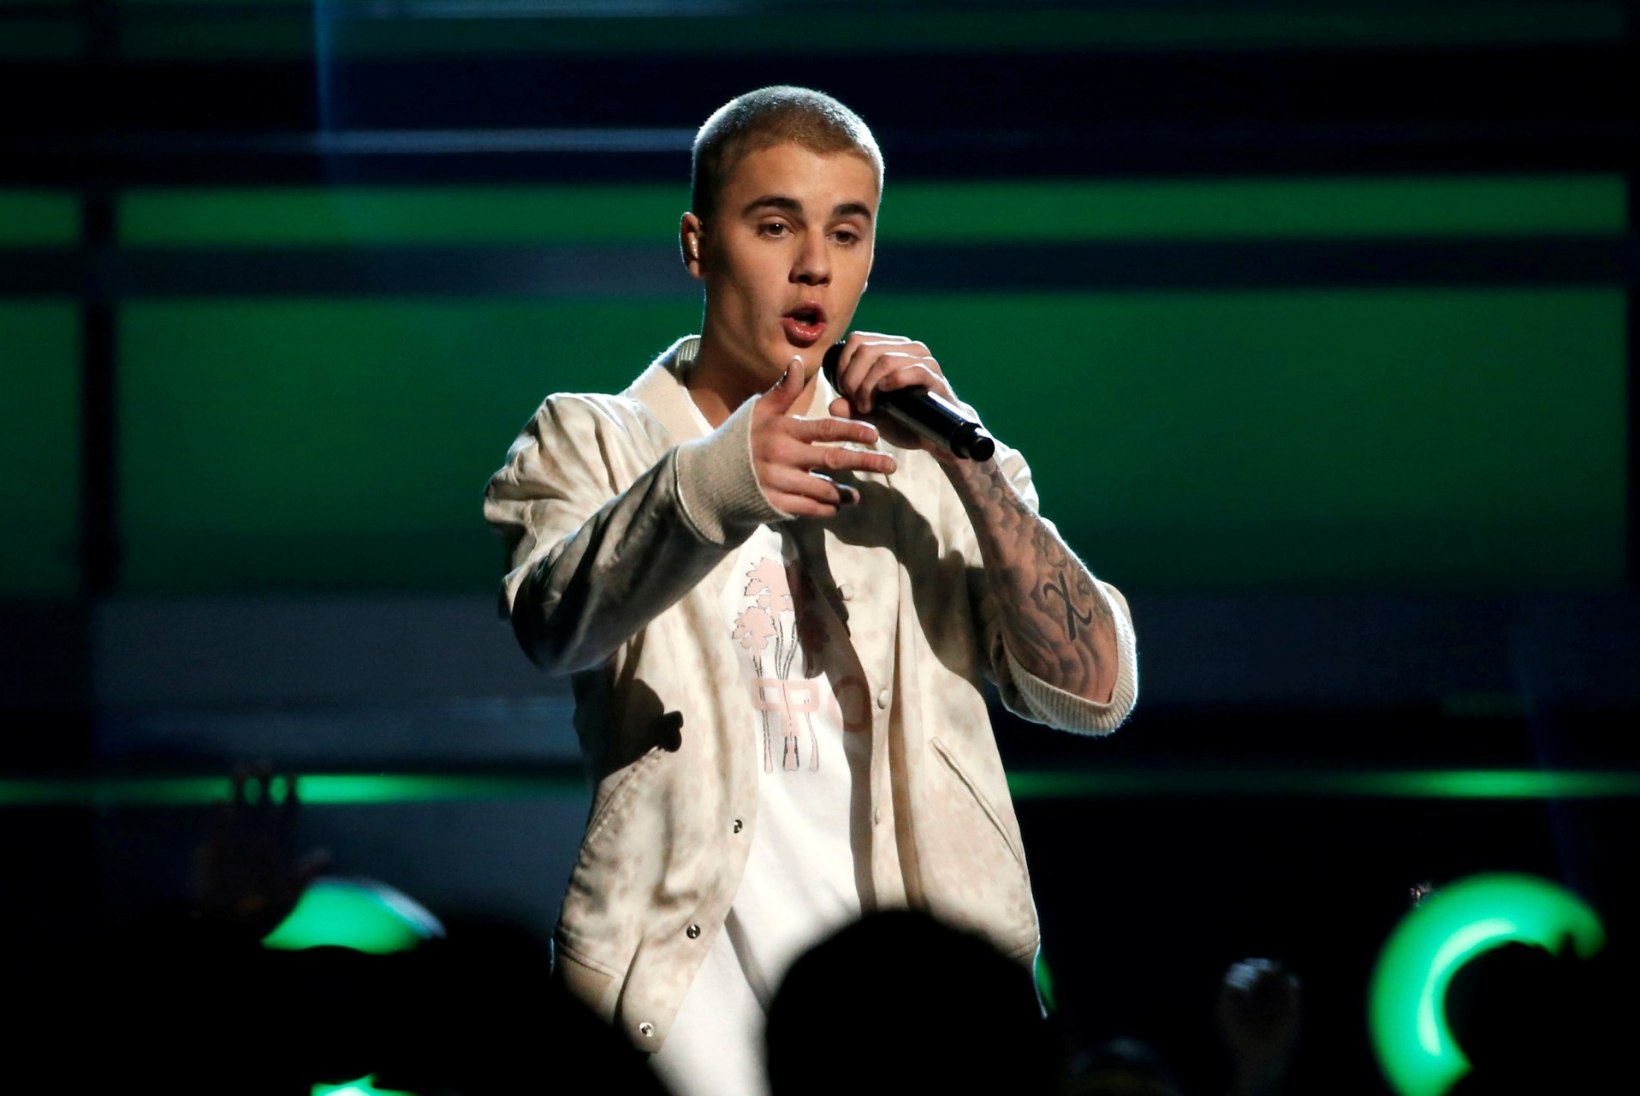 Bieberi niru välimuse põhjus pole mitte narkosõltuvus, vaid rasked haigused